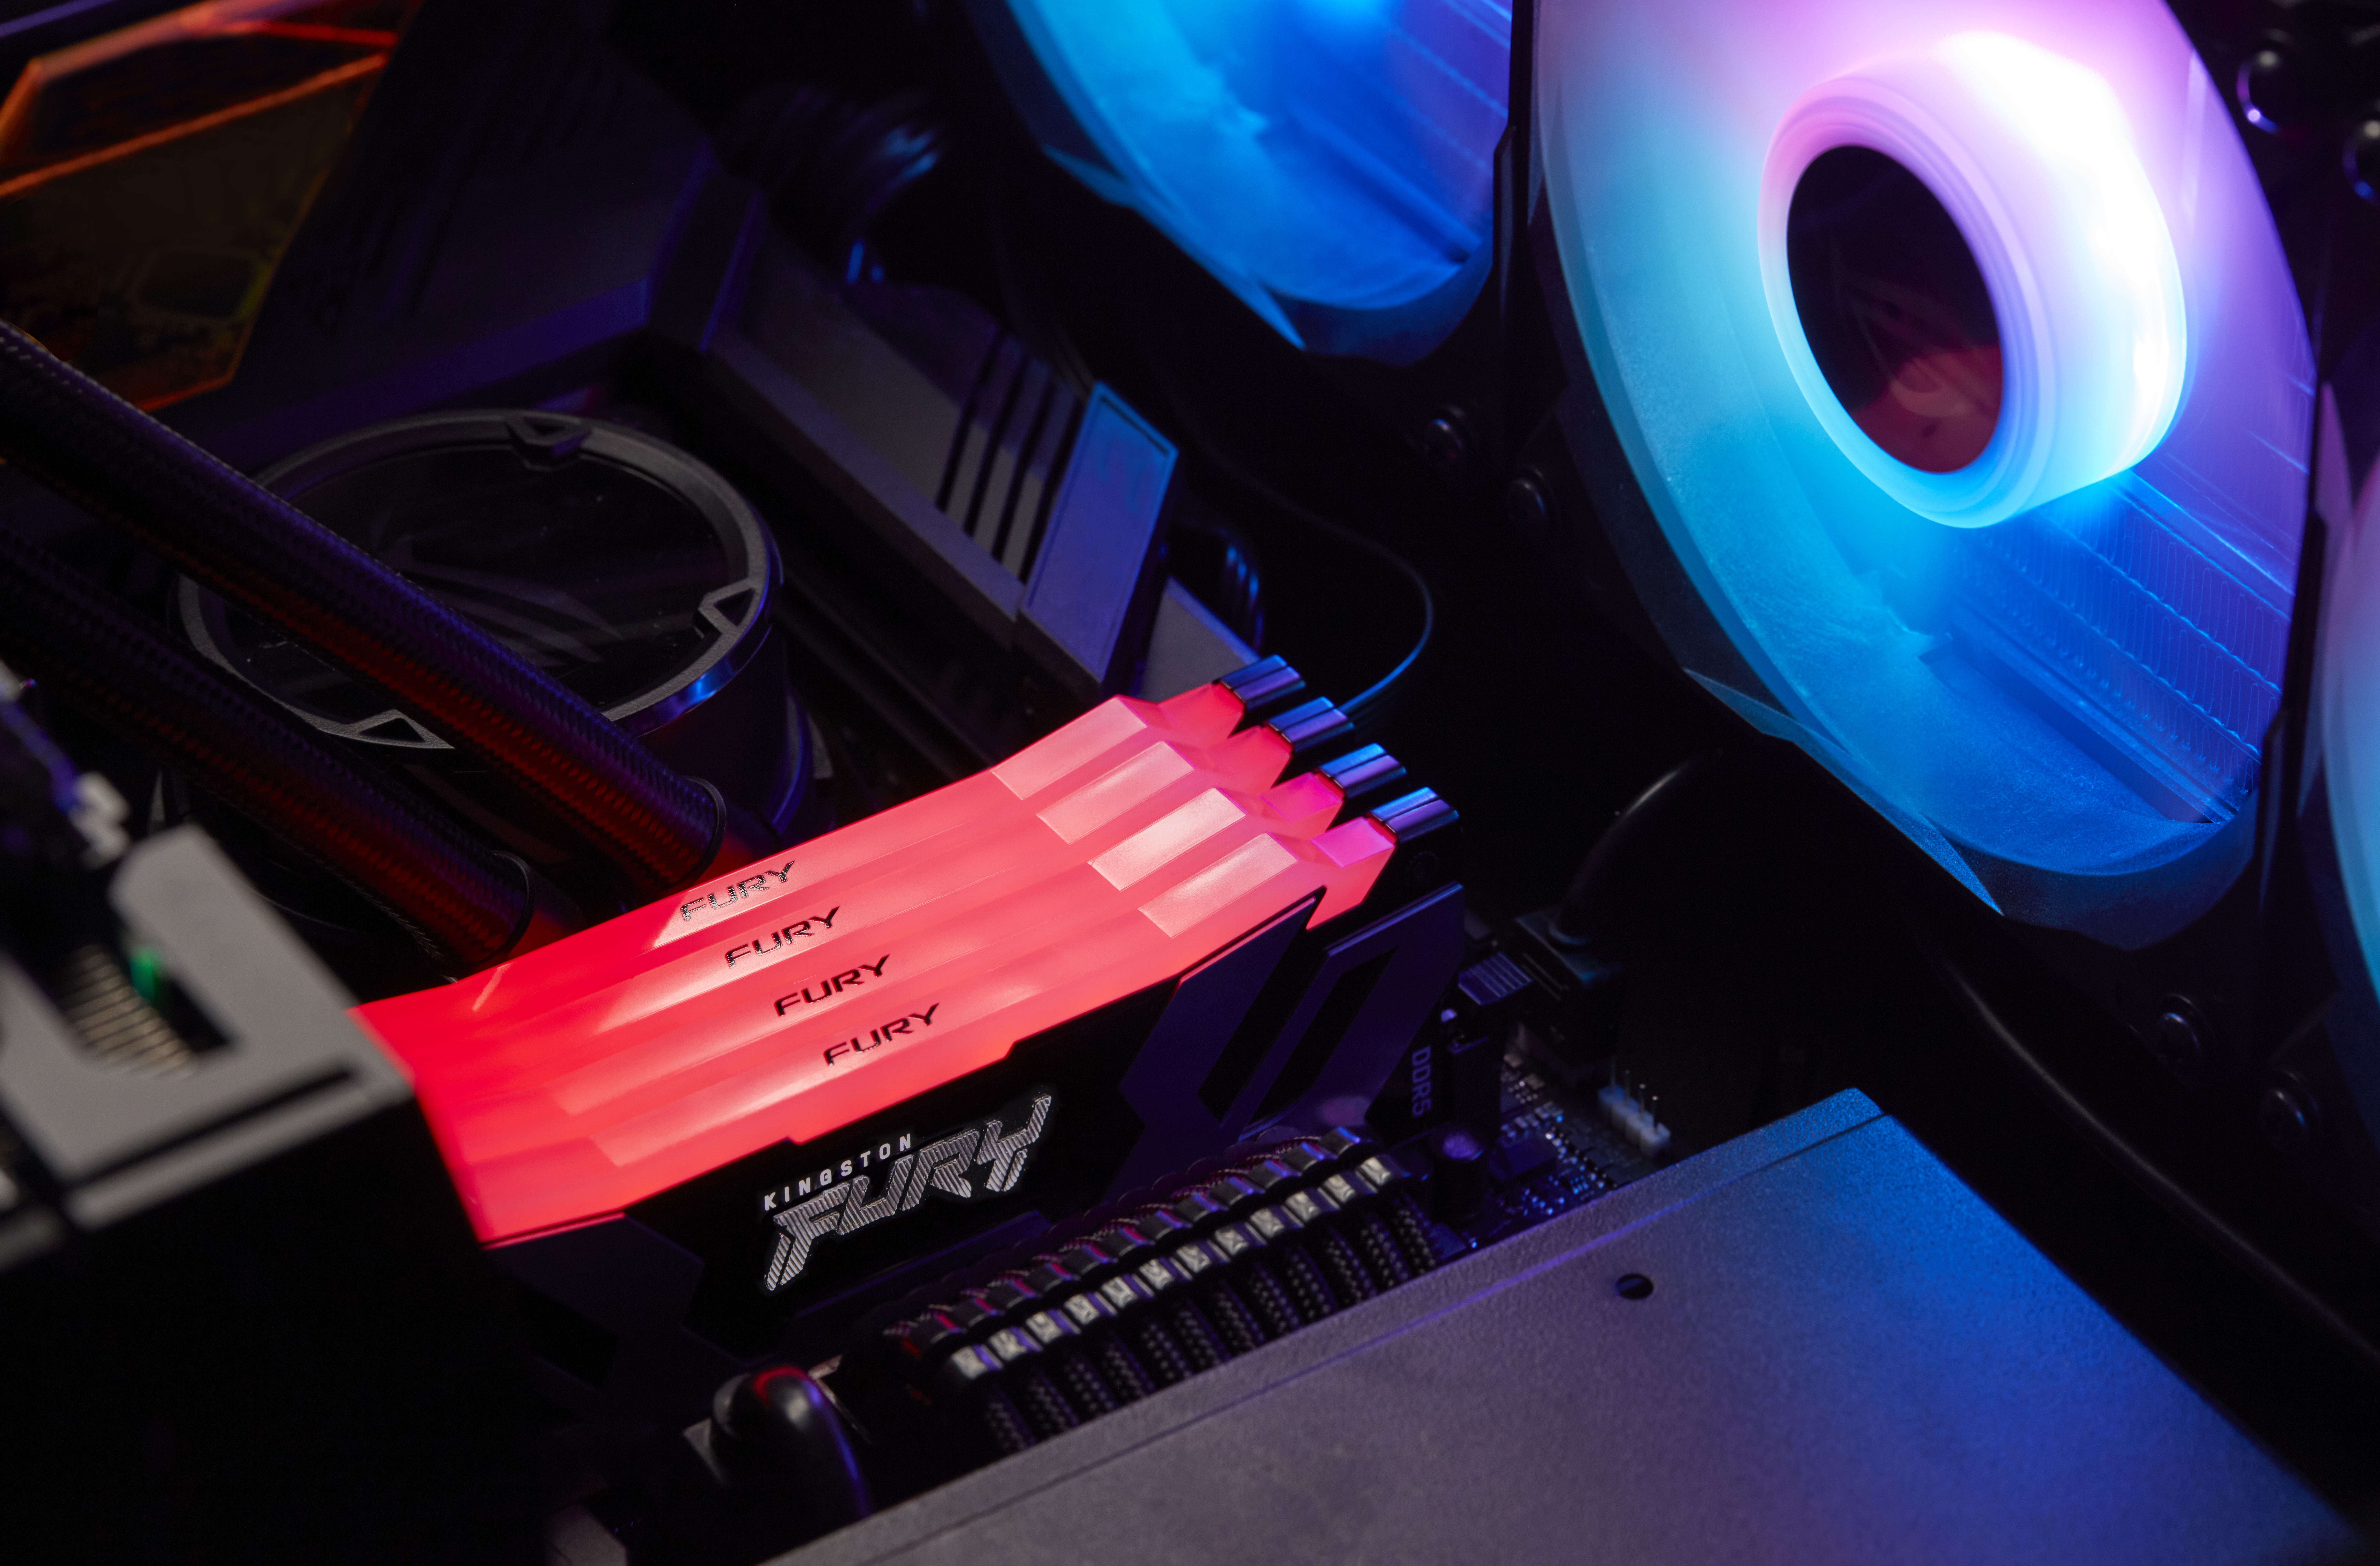 Kingston FURY Renegade RGB - DDR5 - Kit - 32 GB: 2 x 16 GB